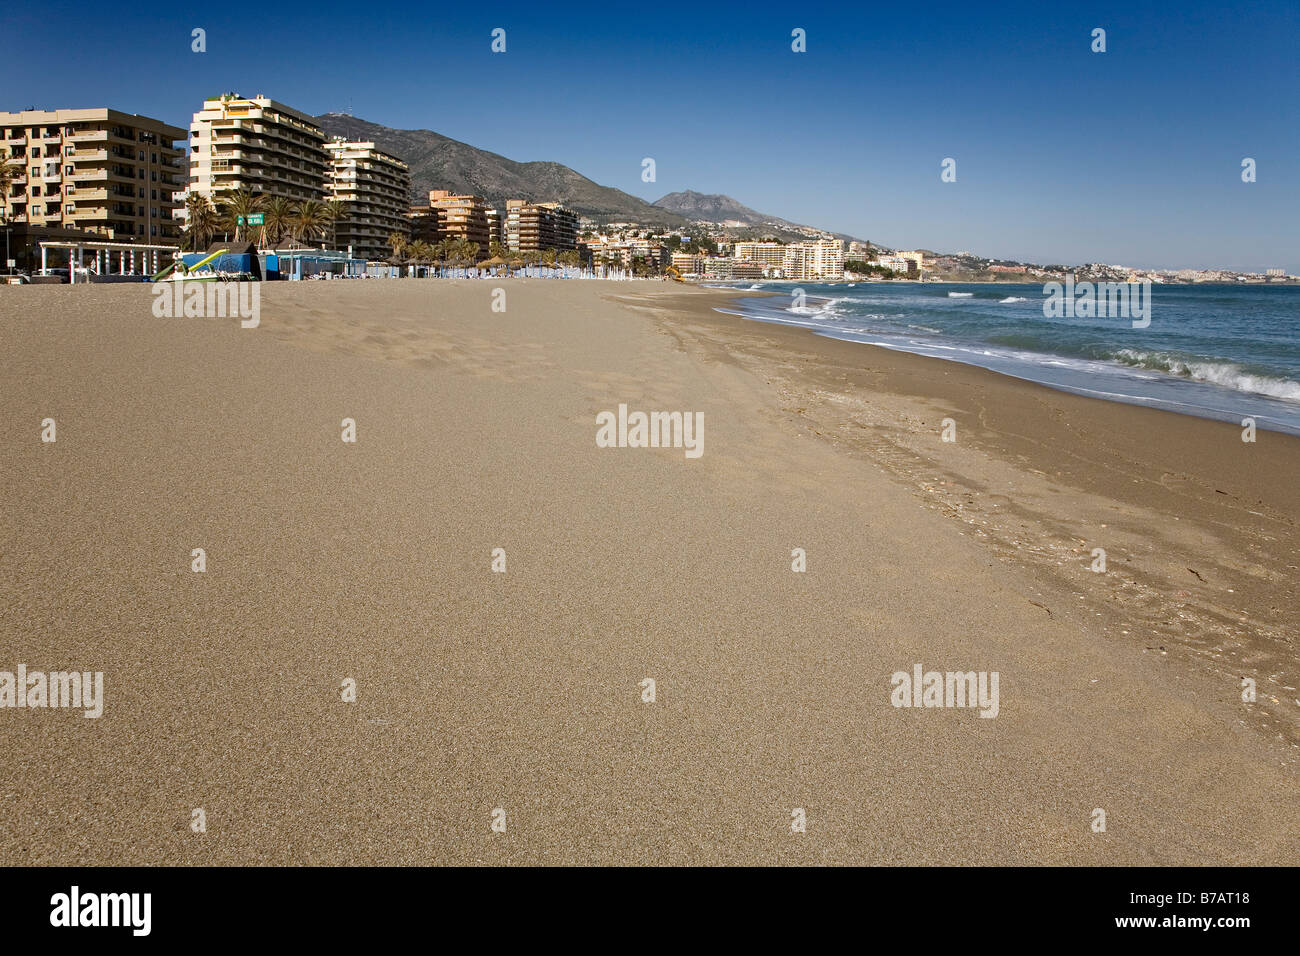 Playa de fuengirola fotografías e imágenes de alta resolución - Alamy